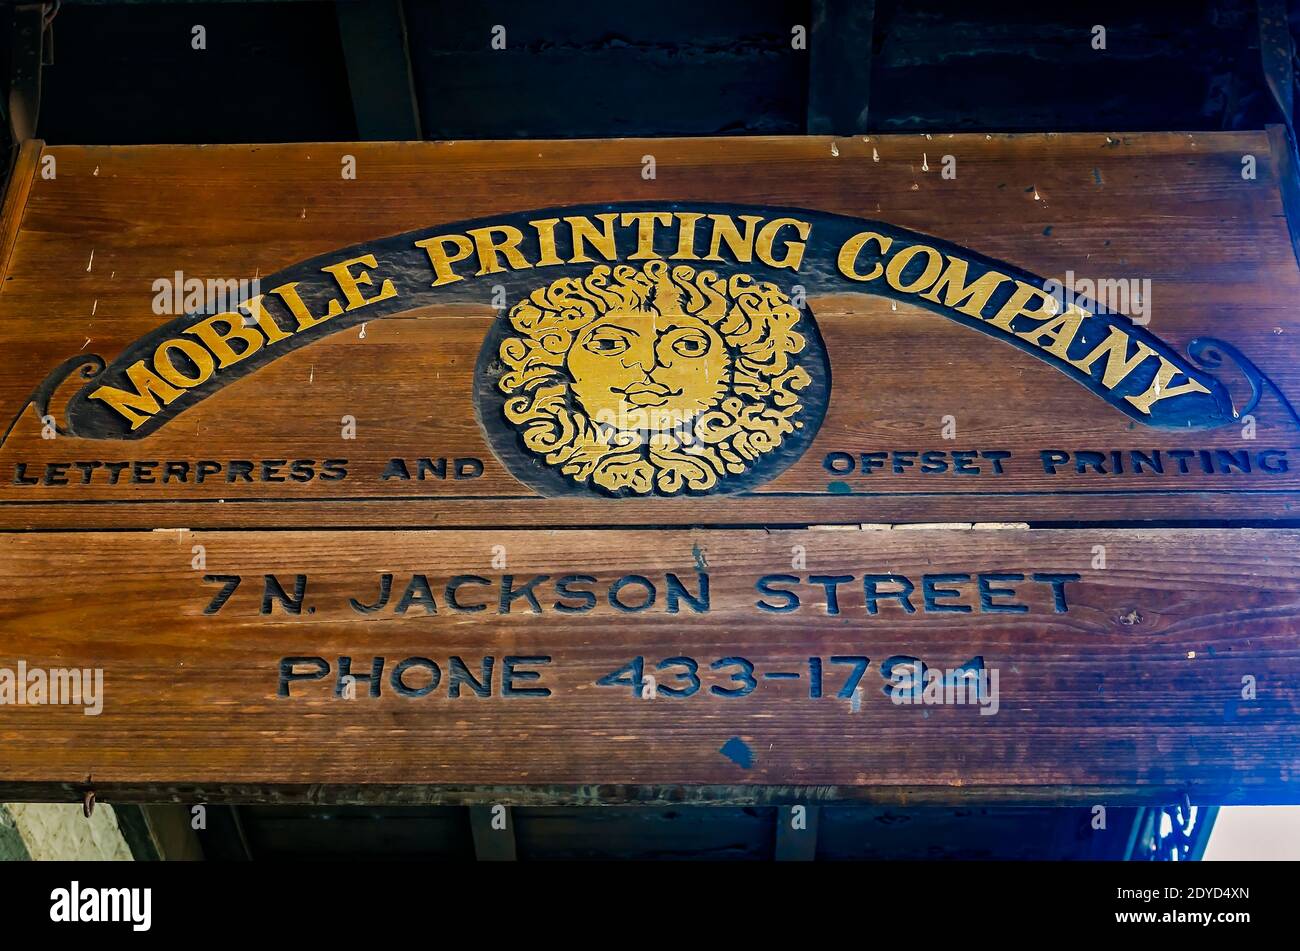 Mobile Printing Company présente un panneau en bois faisant la publicité de leurs services de typographie et d'impression offset, le 9 août 2017, à Mobile, Alabama. Banque D'Images